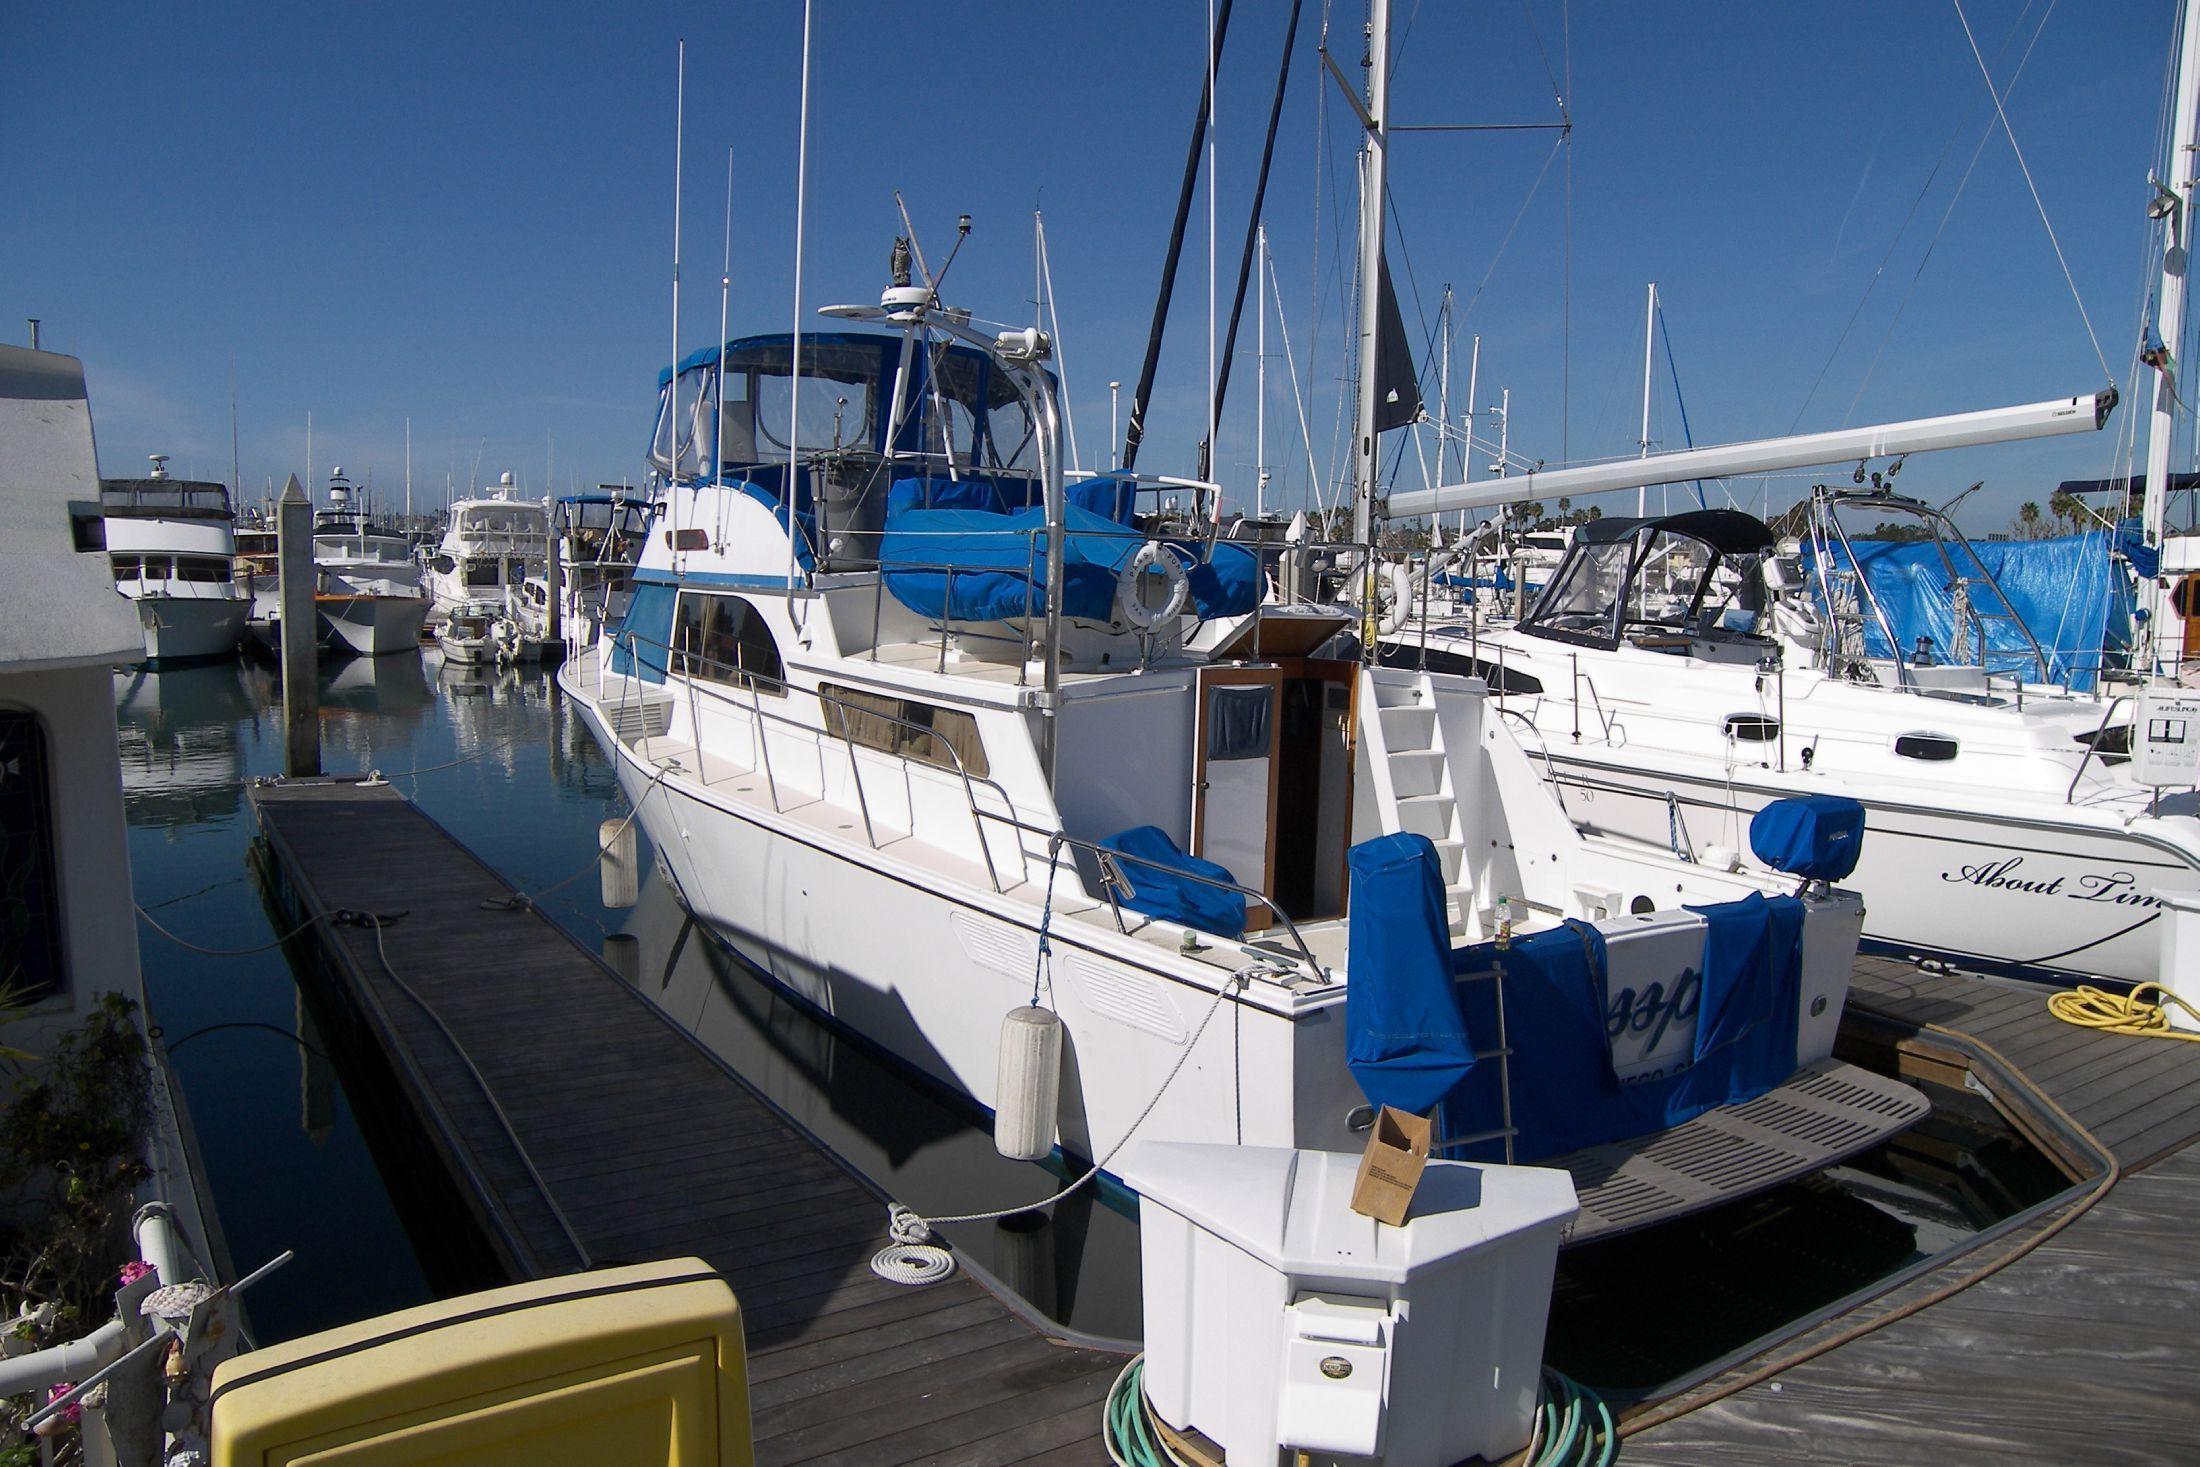 Santa Barbara Yachtfisher, San Diego